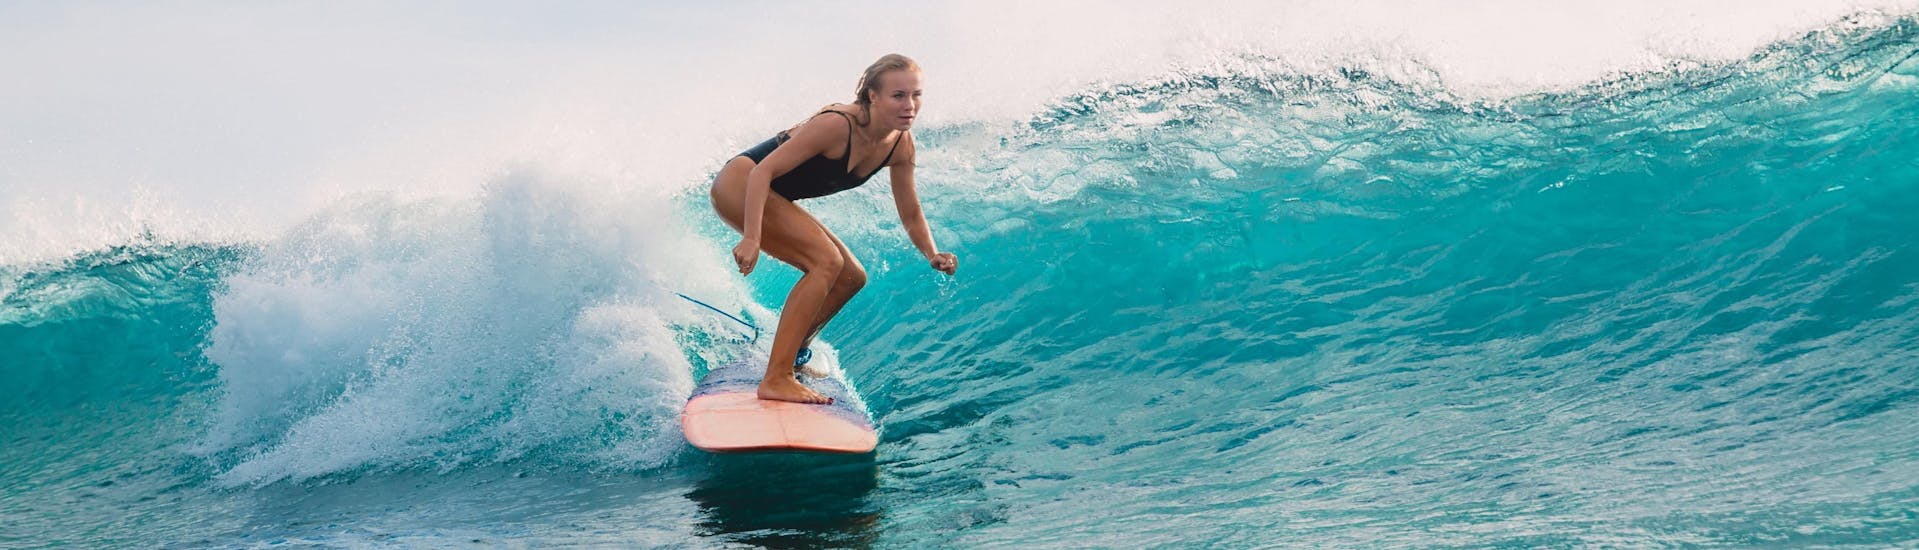 Eine junge Frau beim Surfen in der Urlaubsregion Lourinhã.